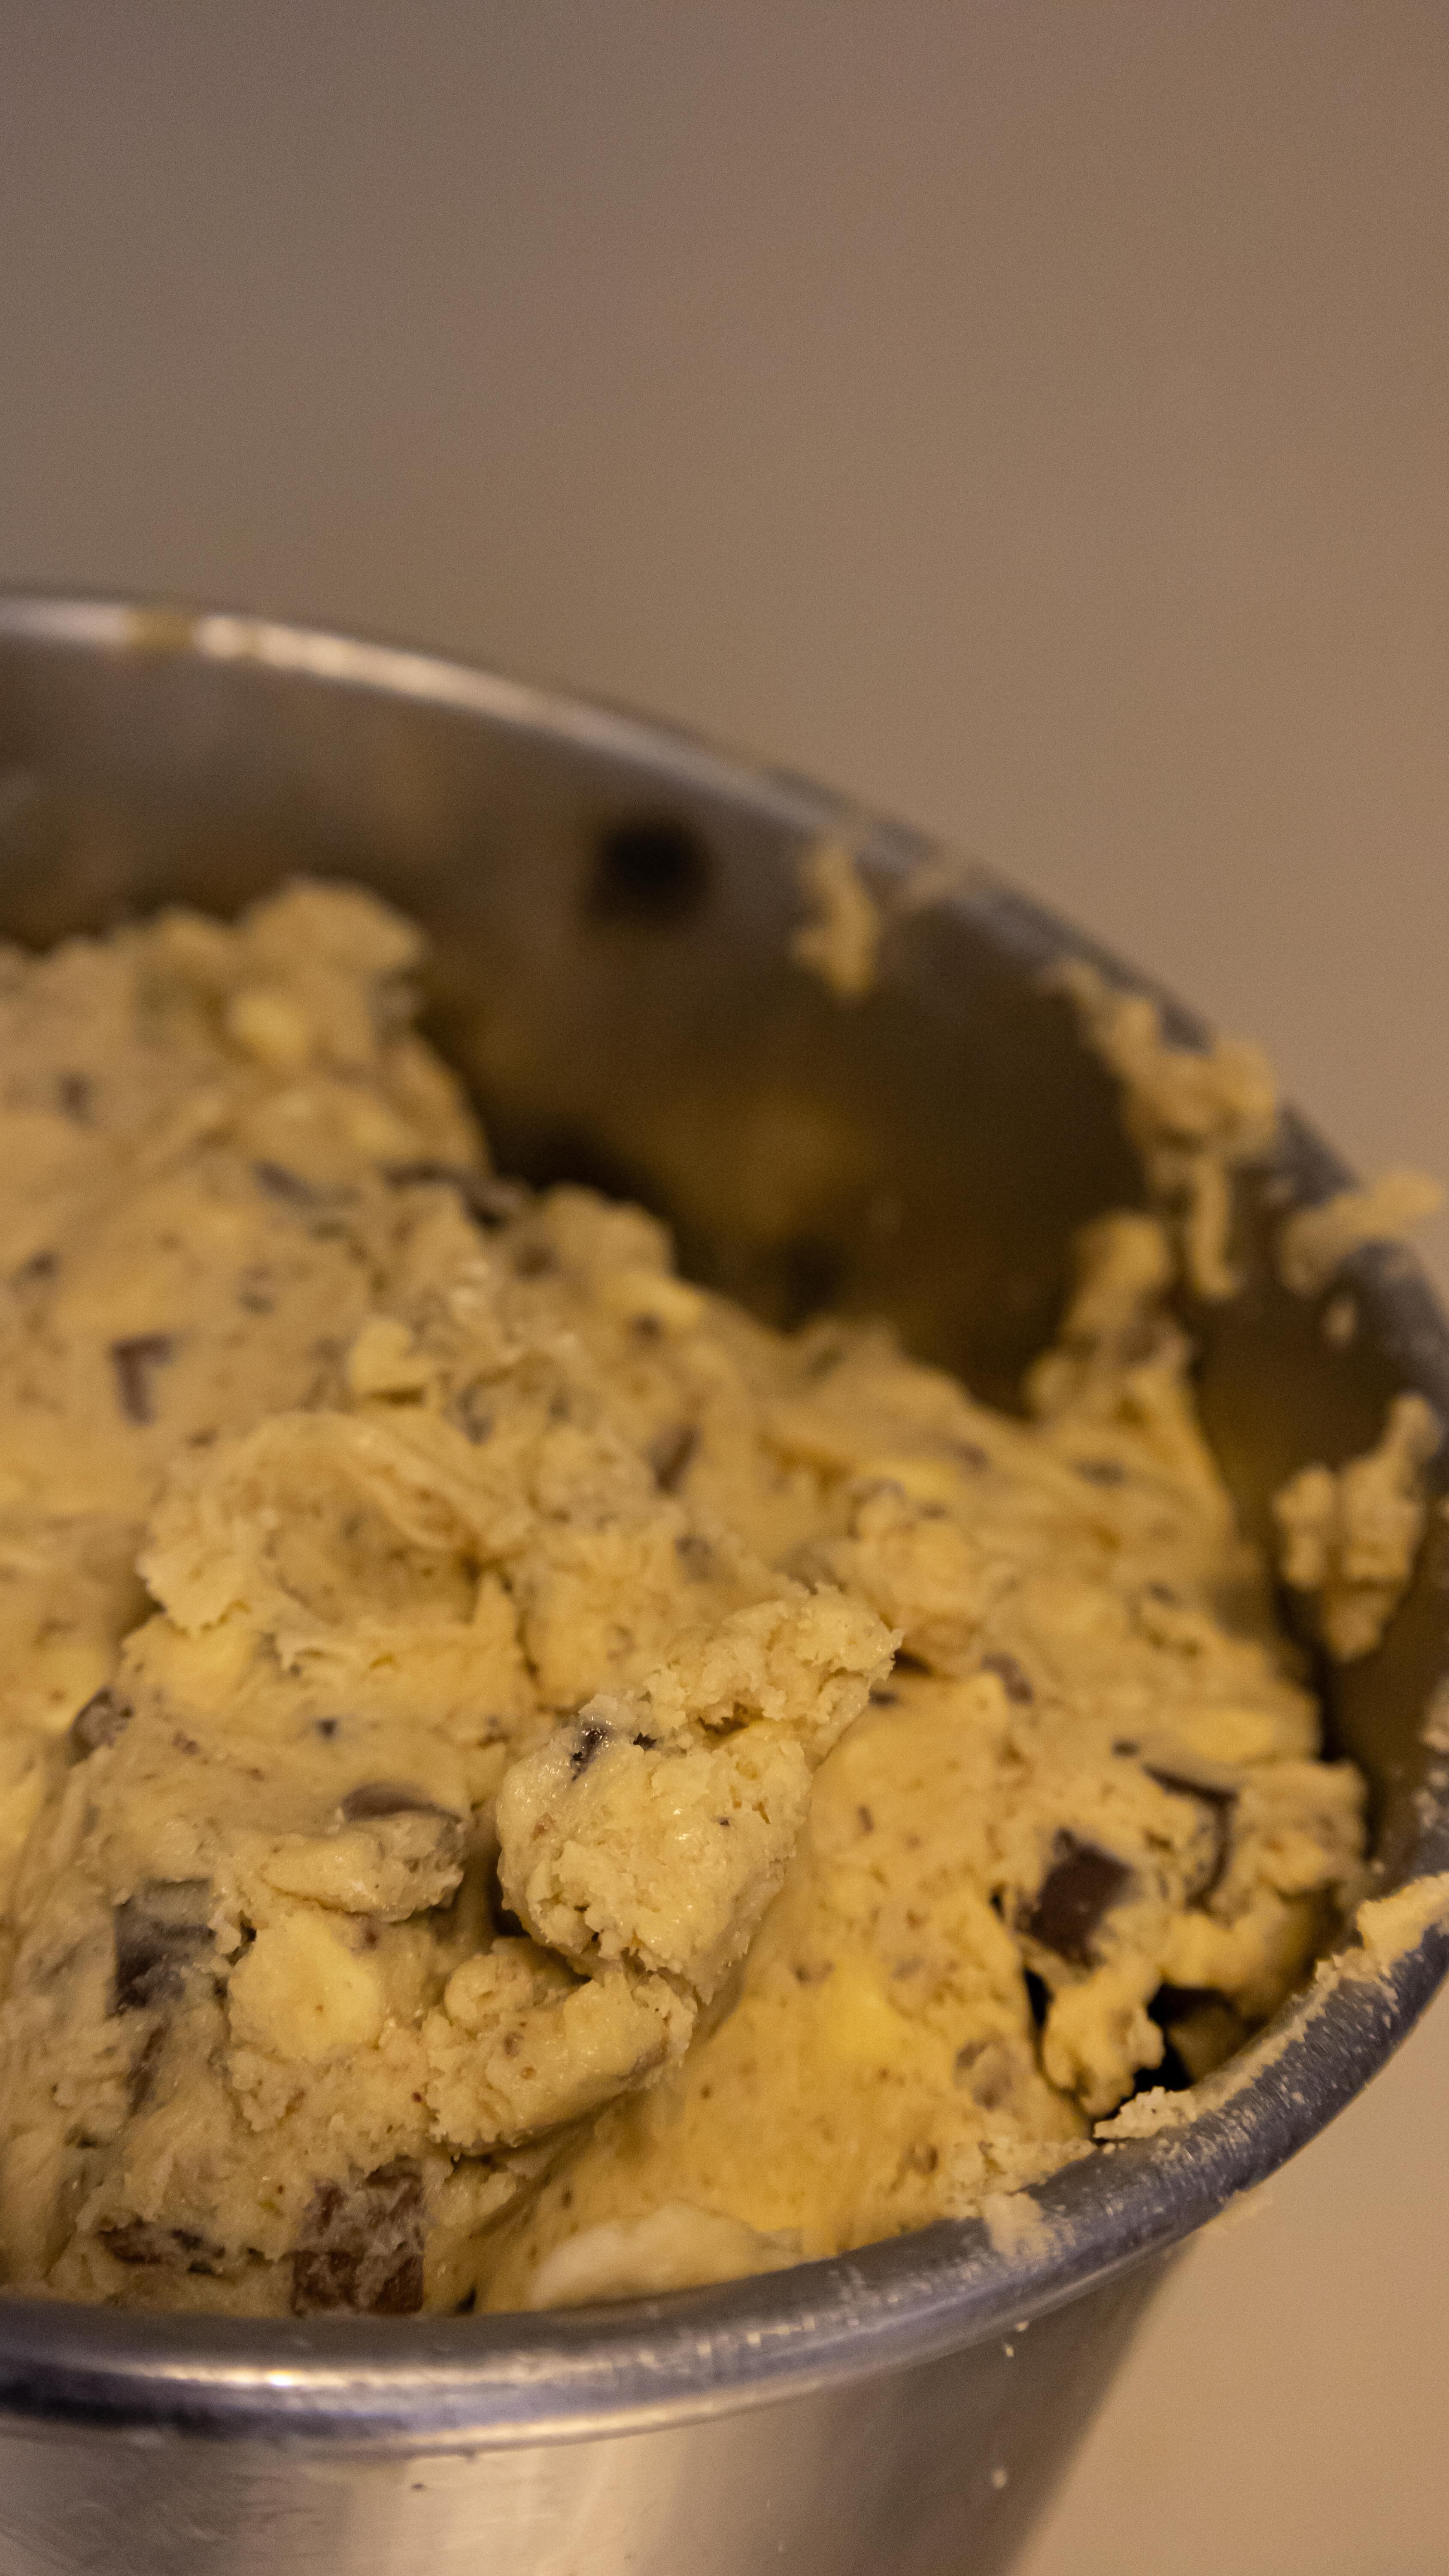 BACKSTAGE préparation cookies 3 chocolats amandes👨🏼‍🍳 

À l’atelier, notre maître cookie s’active pour vous préparer les merveilleux Cookies Giraudon ! 🍪

🍪 Faits maison à Gémenos (13)
📍Disponibles dans plusieurs points de vente
💌 Plus d’infos sur notre site web (lien dans notre bio)

#CookiesGiraudon #backstage #préparationcookies #CookiesFaitsMaison #CookiesArtisanaux #FaitAvecAmour #Gémenos #RecetteAuthentique #Gourmands  #CuisineArtisanale #marseille #MadeInFrance #CookiesAddict